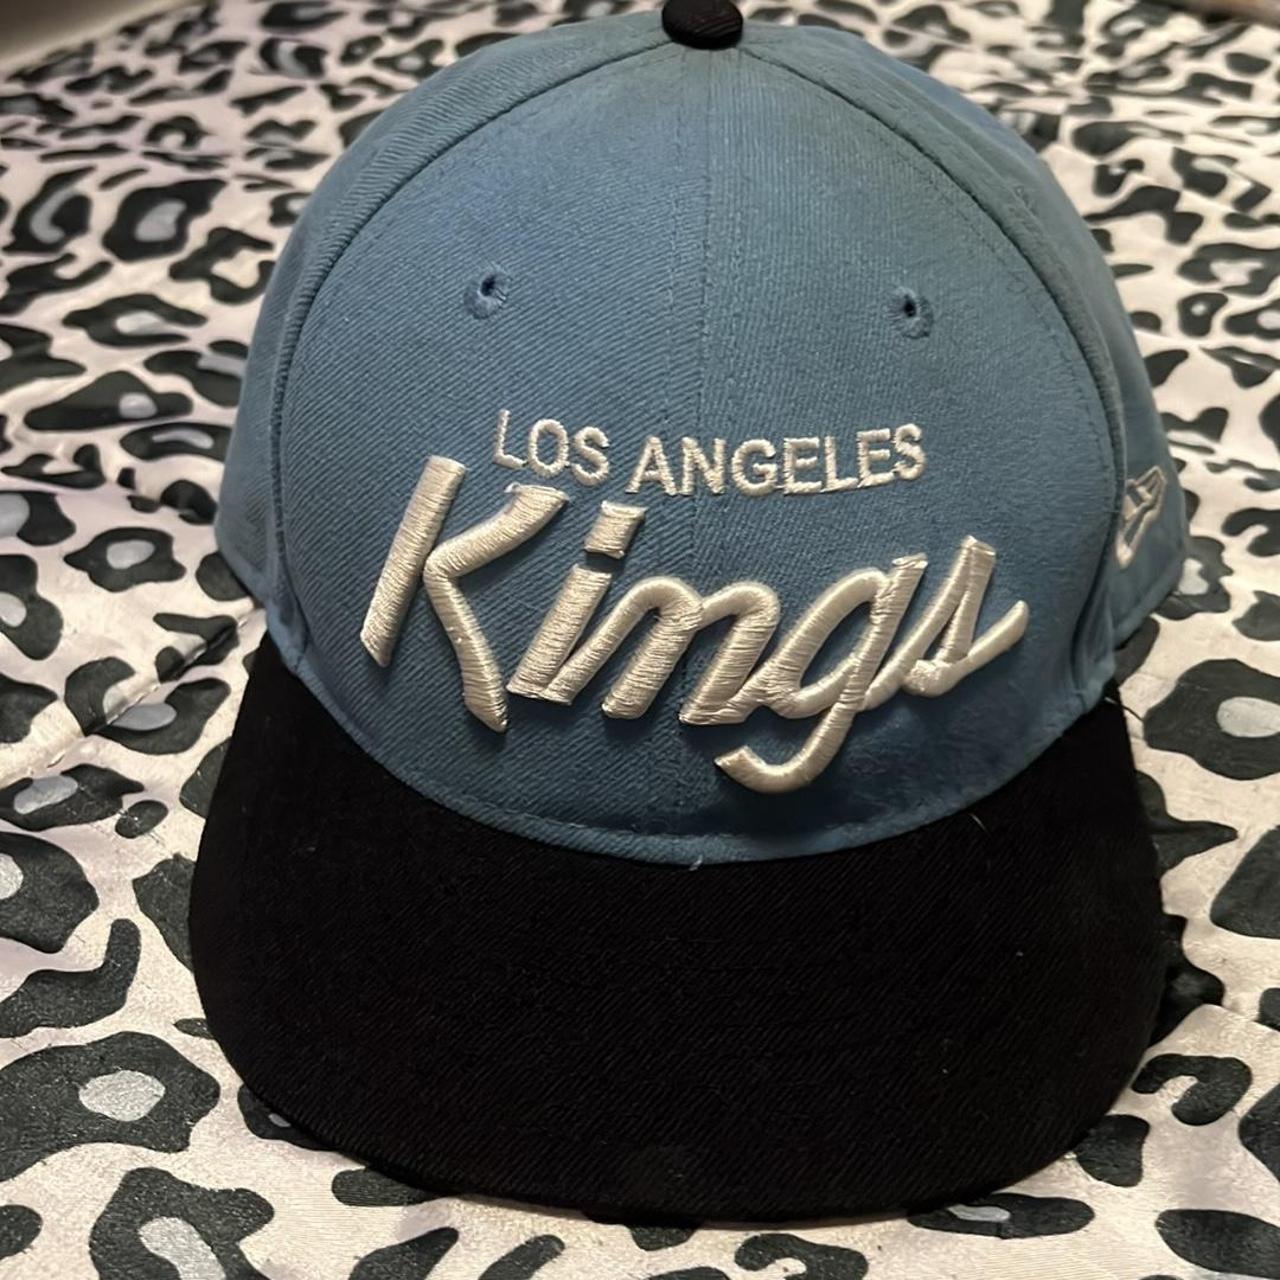 Vintage Los Angeles Kings Sports Specialties Script Snapback